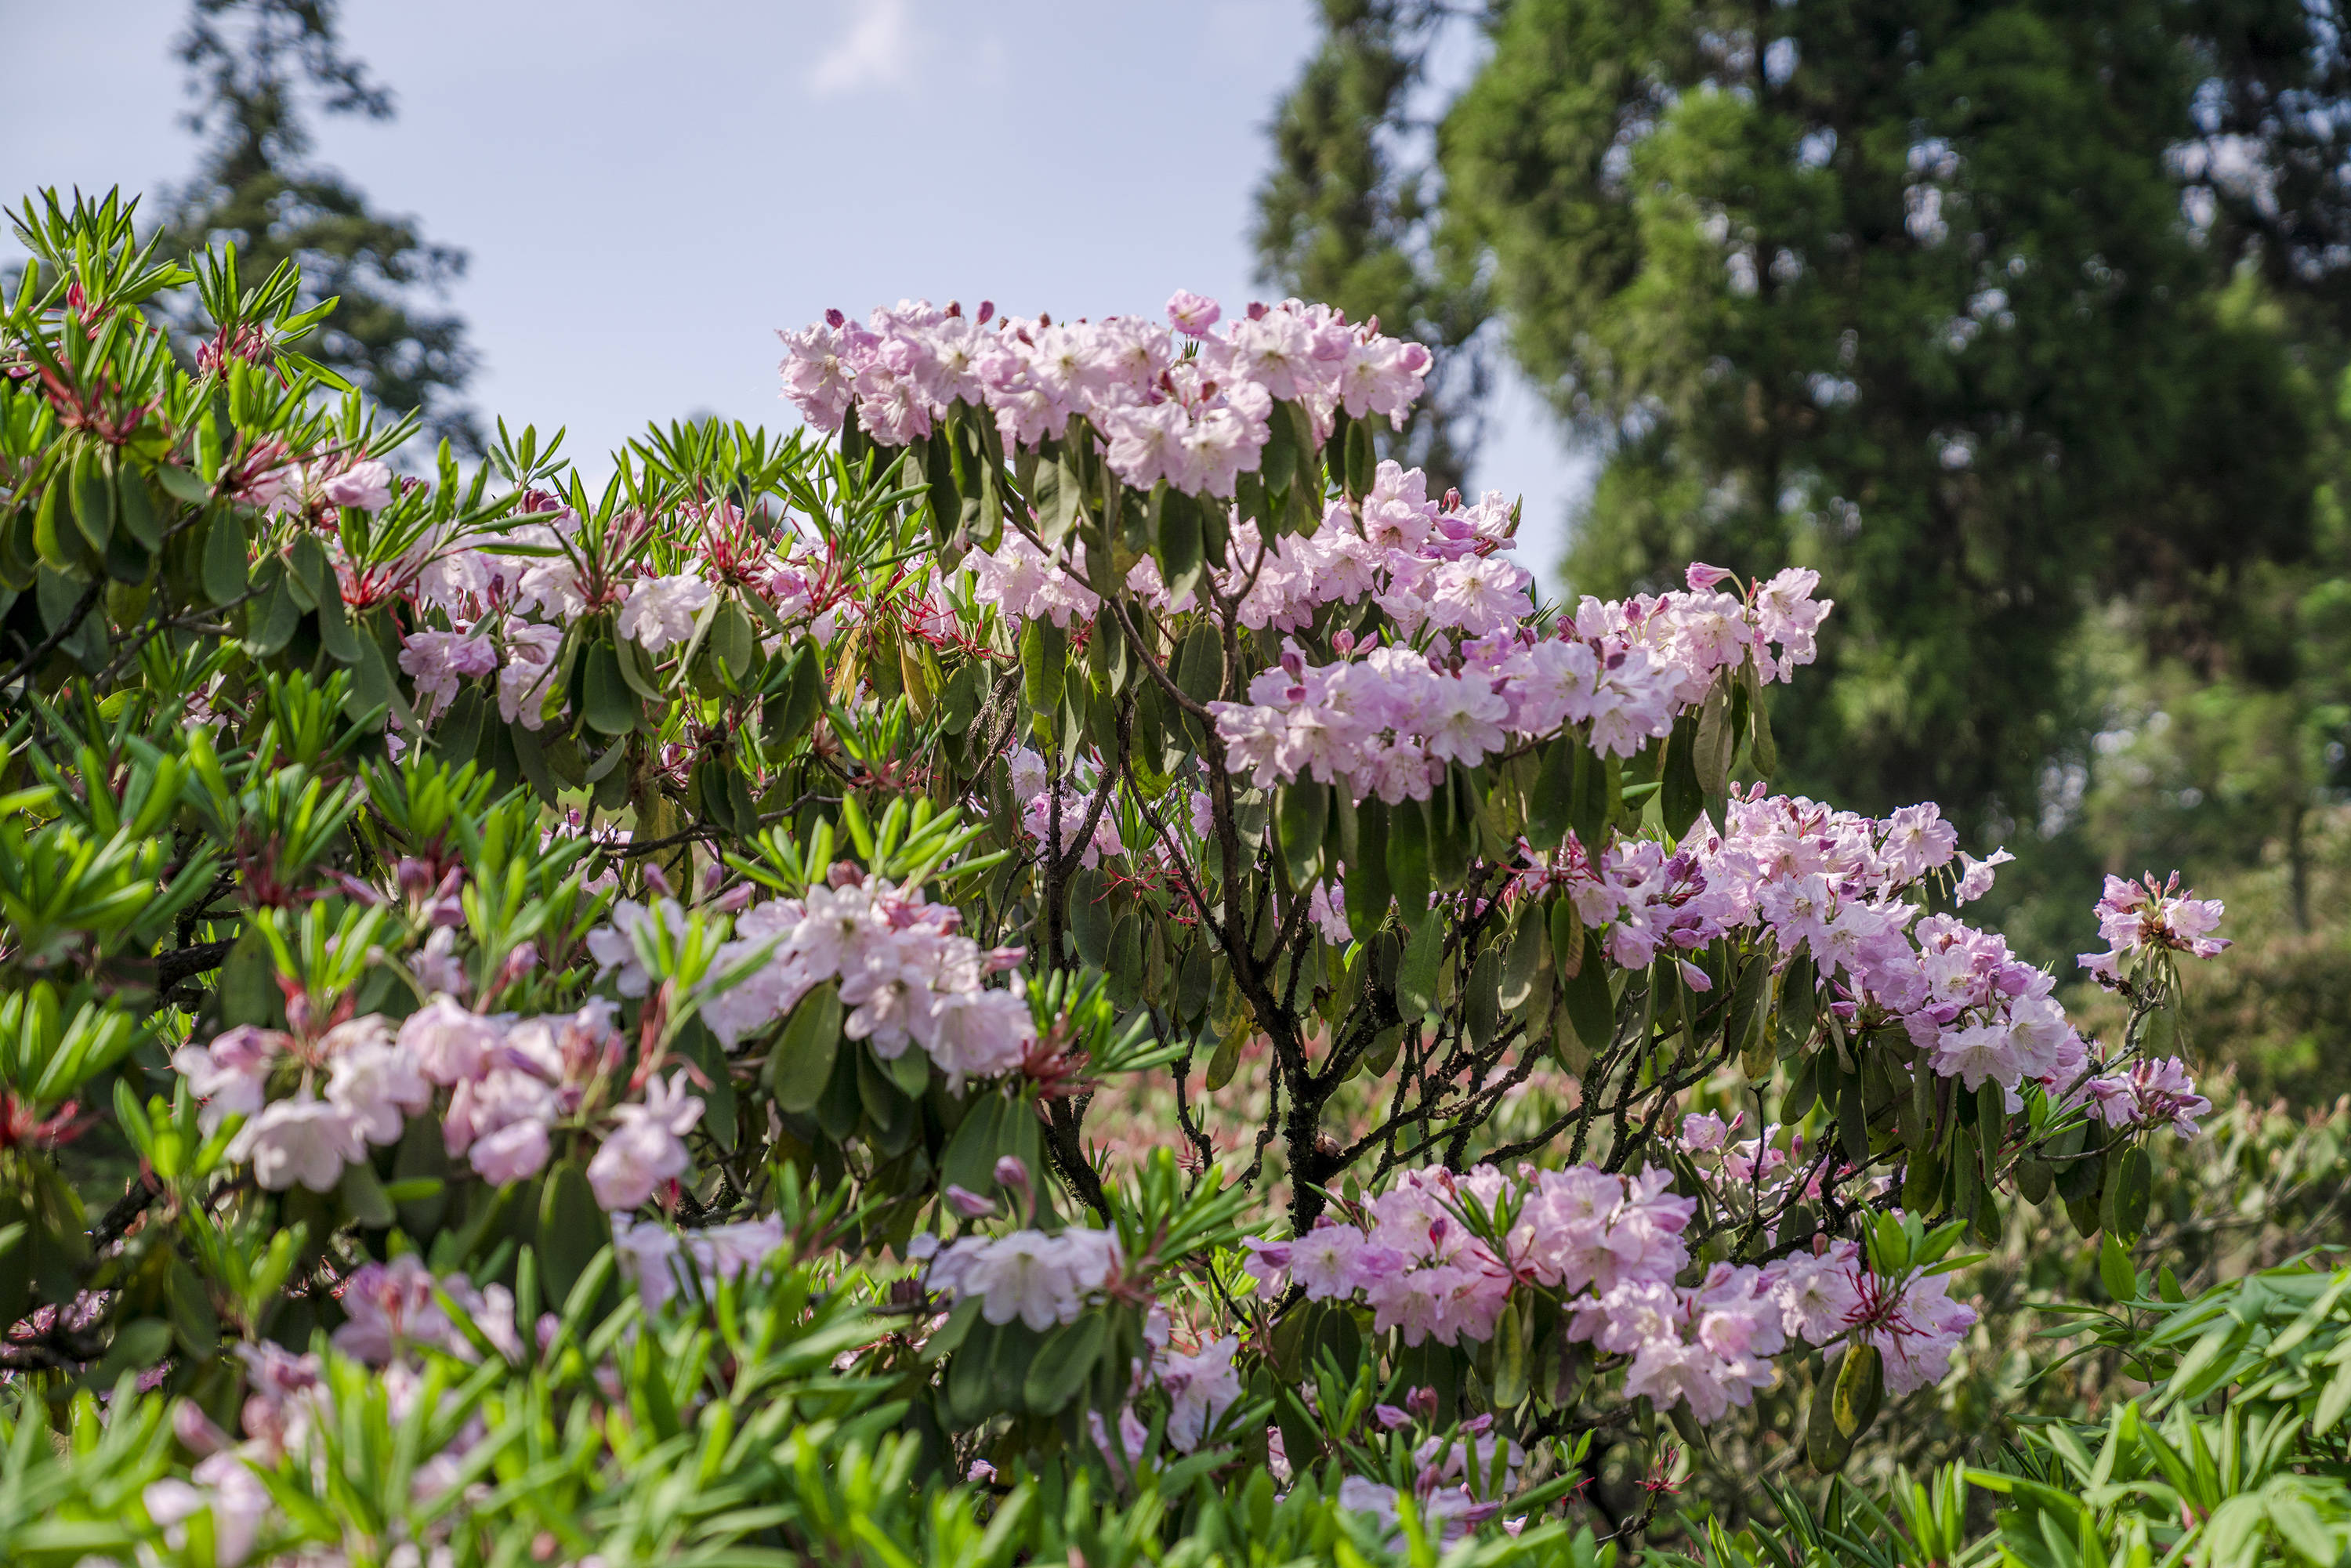 长在树上的杜鹃花浙江小城独有每年五月开花吸引大量游客前往